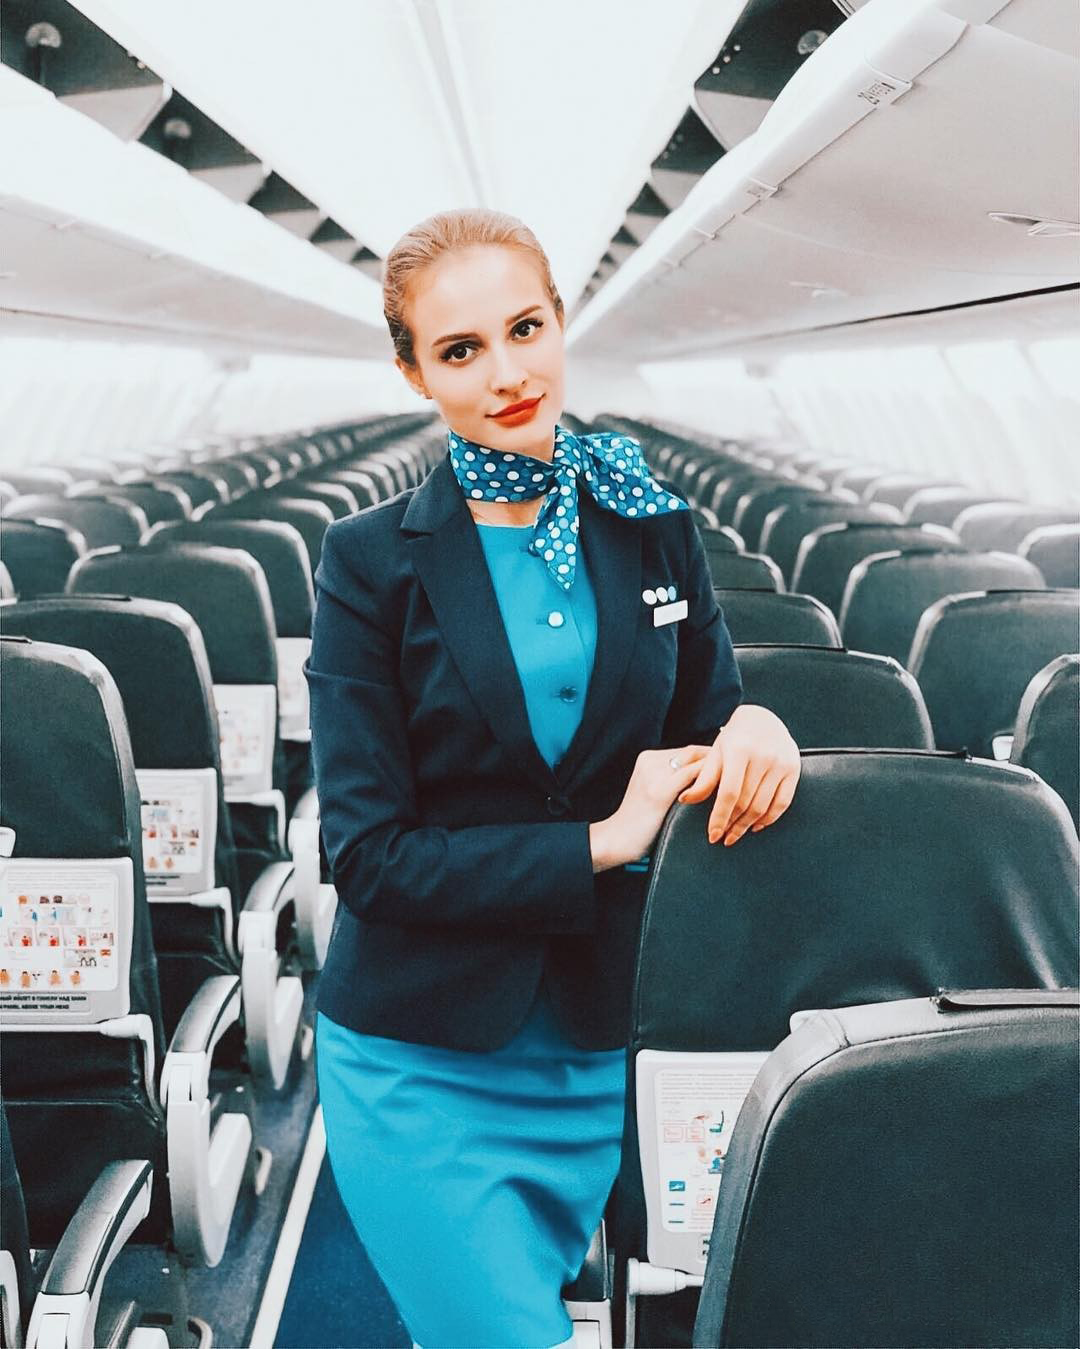 在俄罗斯航空公司,有一名俄罗斯姑娘克里斯蒂娜,她的职业就是空姐